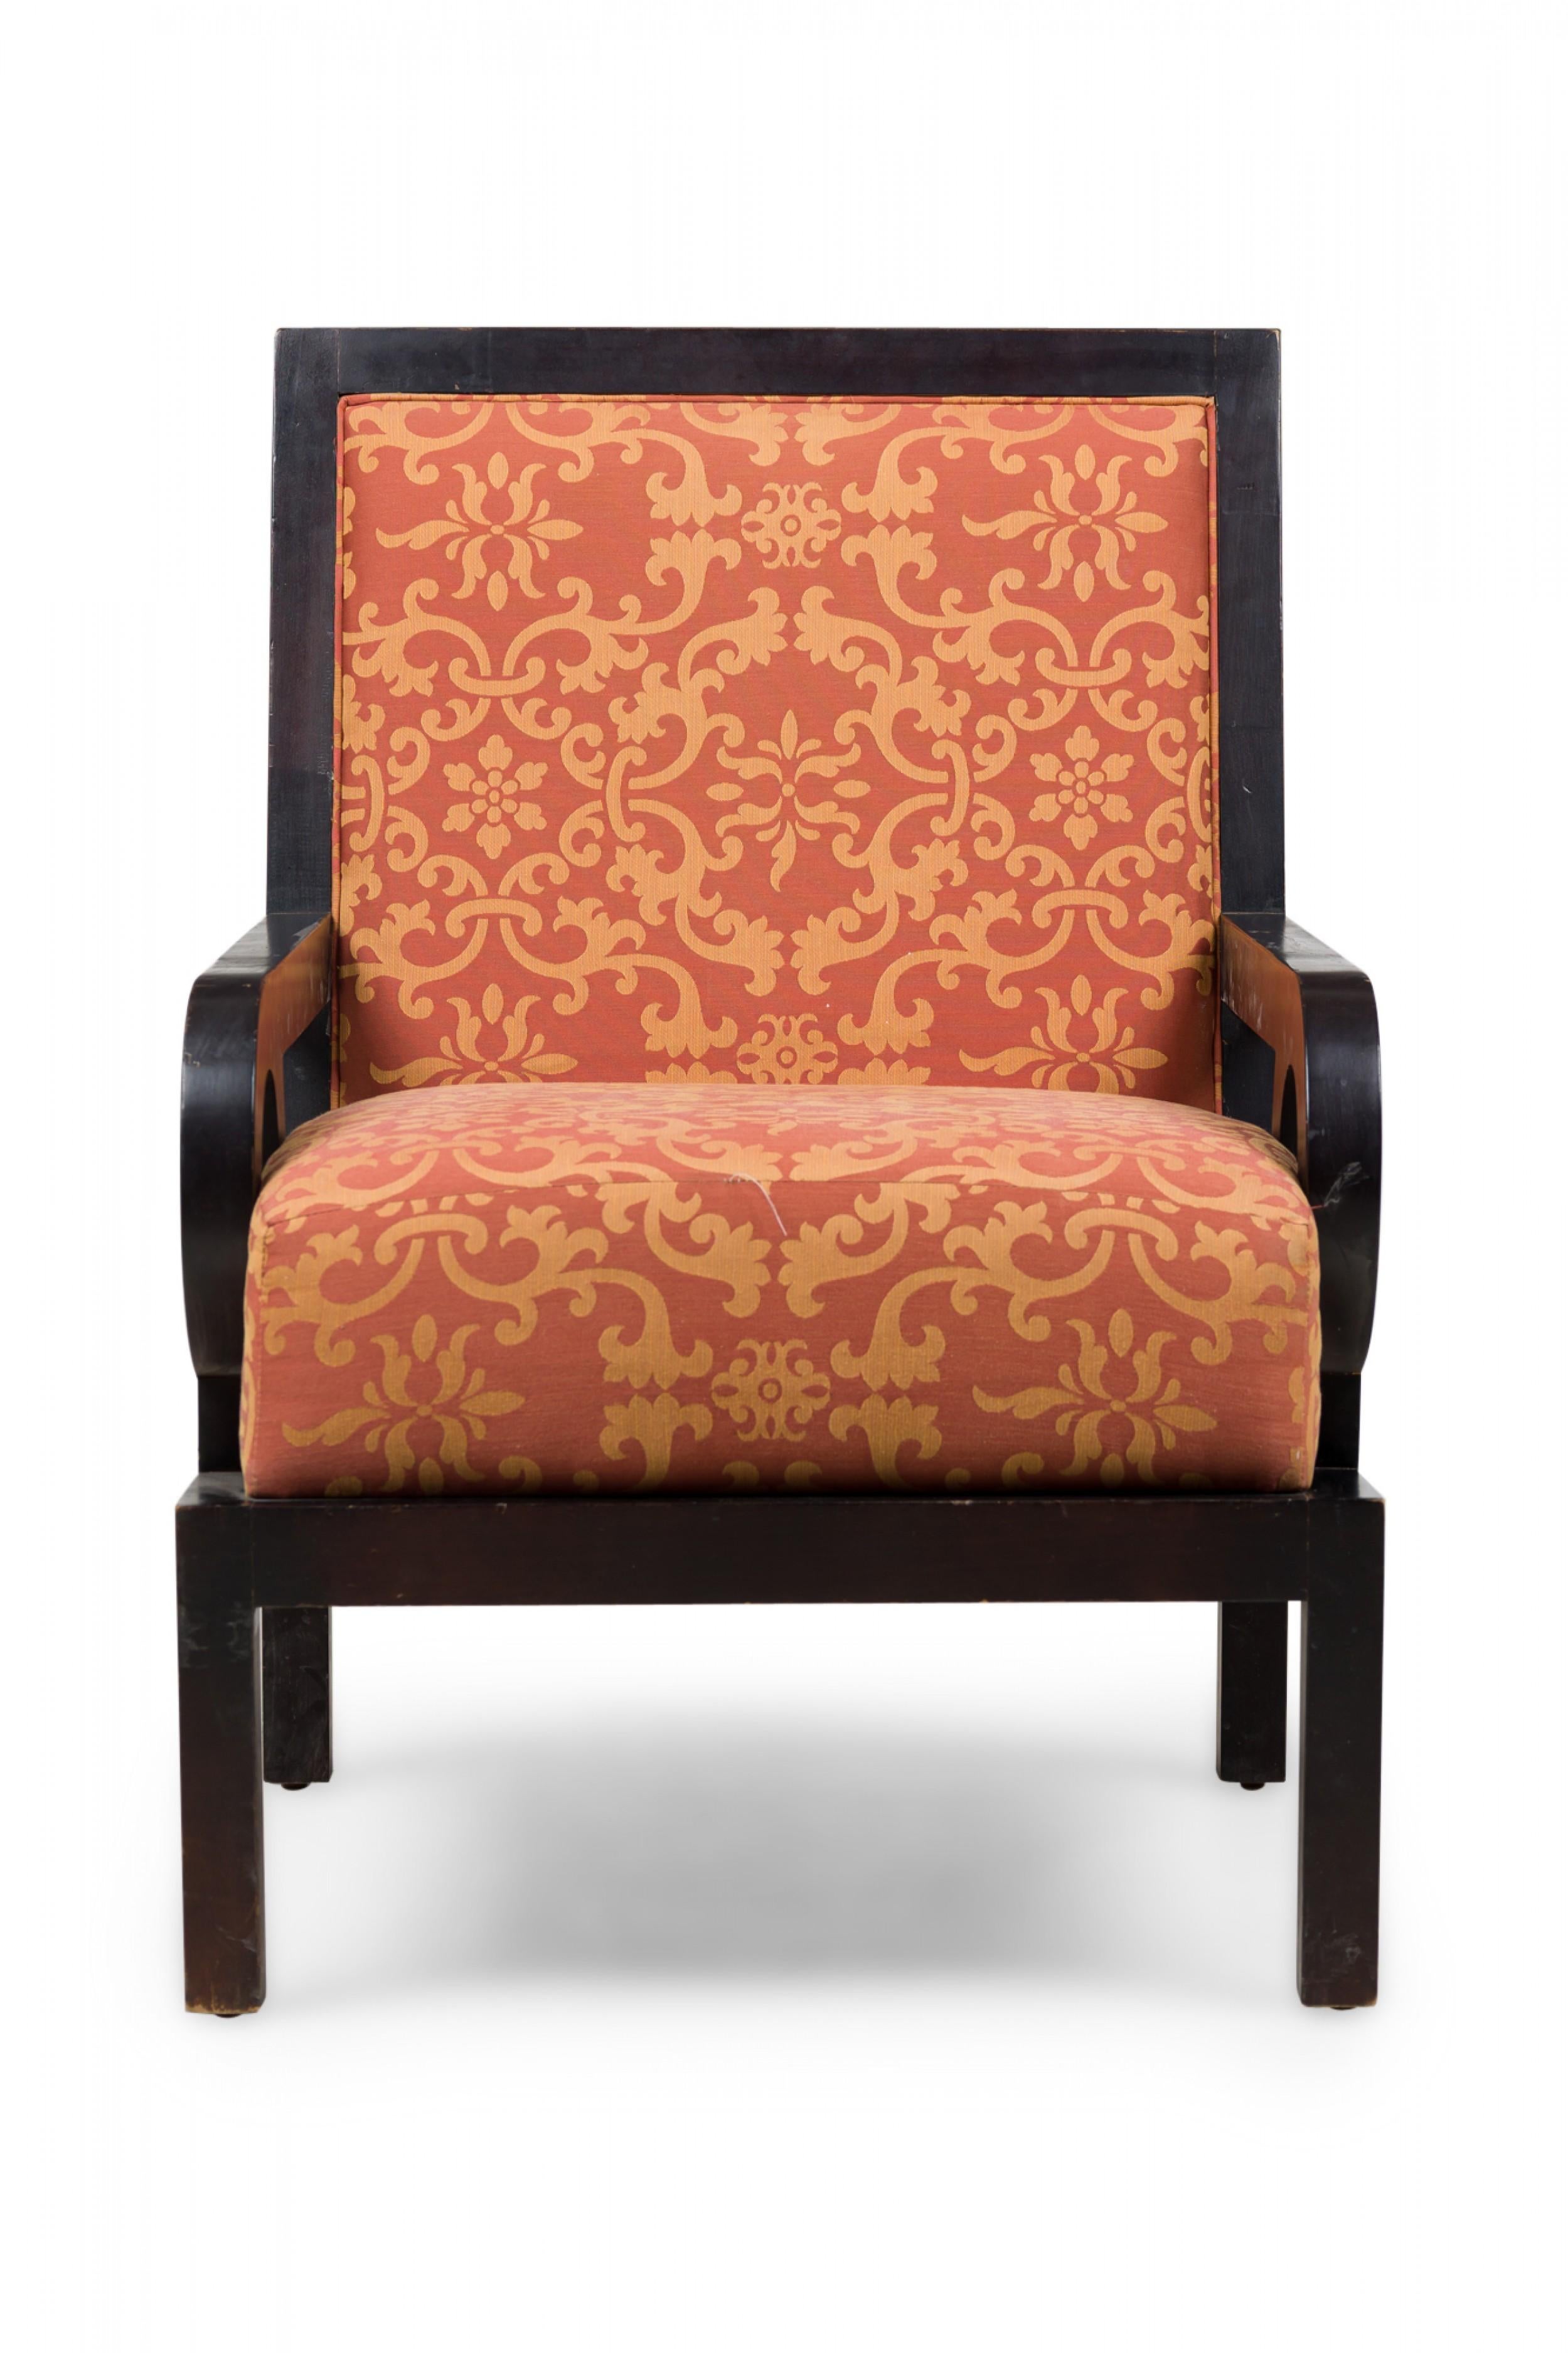 PAIRE de fauteuils club / fauteuils surdimensionnés anglais du milieu du siècle, avec des cadres en noyer à finition foncée, des dossiers carrés et des accoudoirs avec des découpes circulaires, recouverts d'un tissu damassé à motifs orange rouille